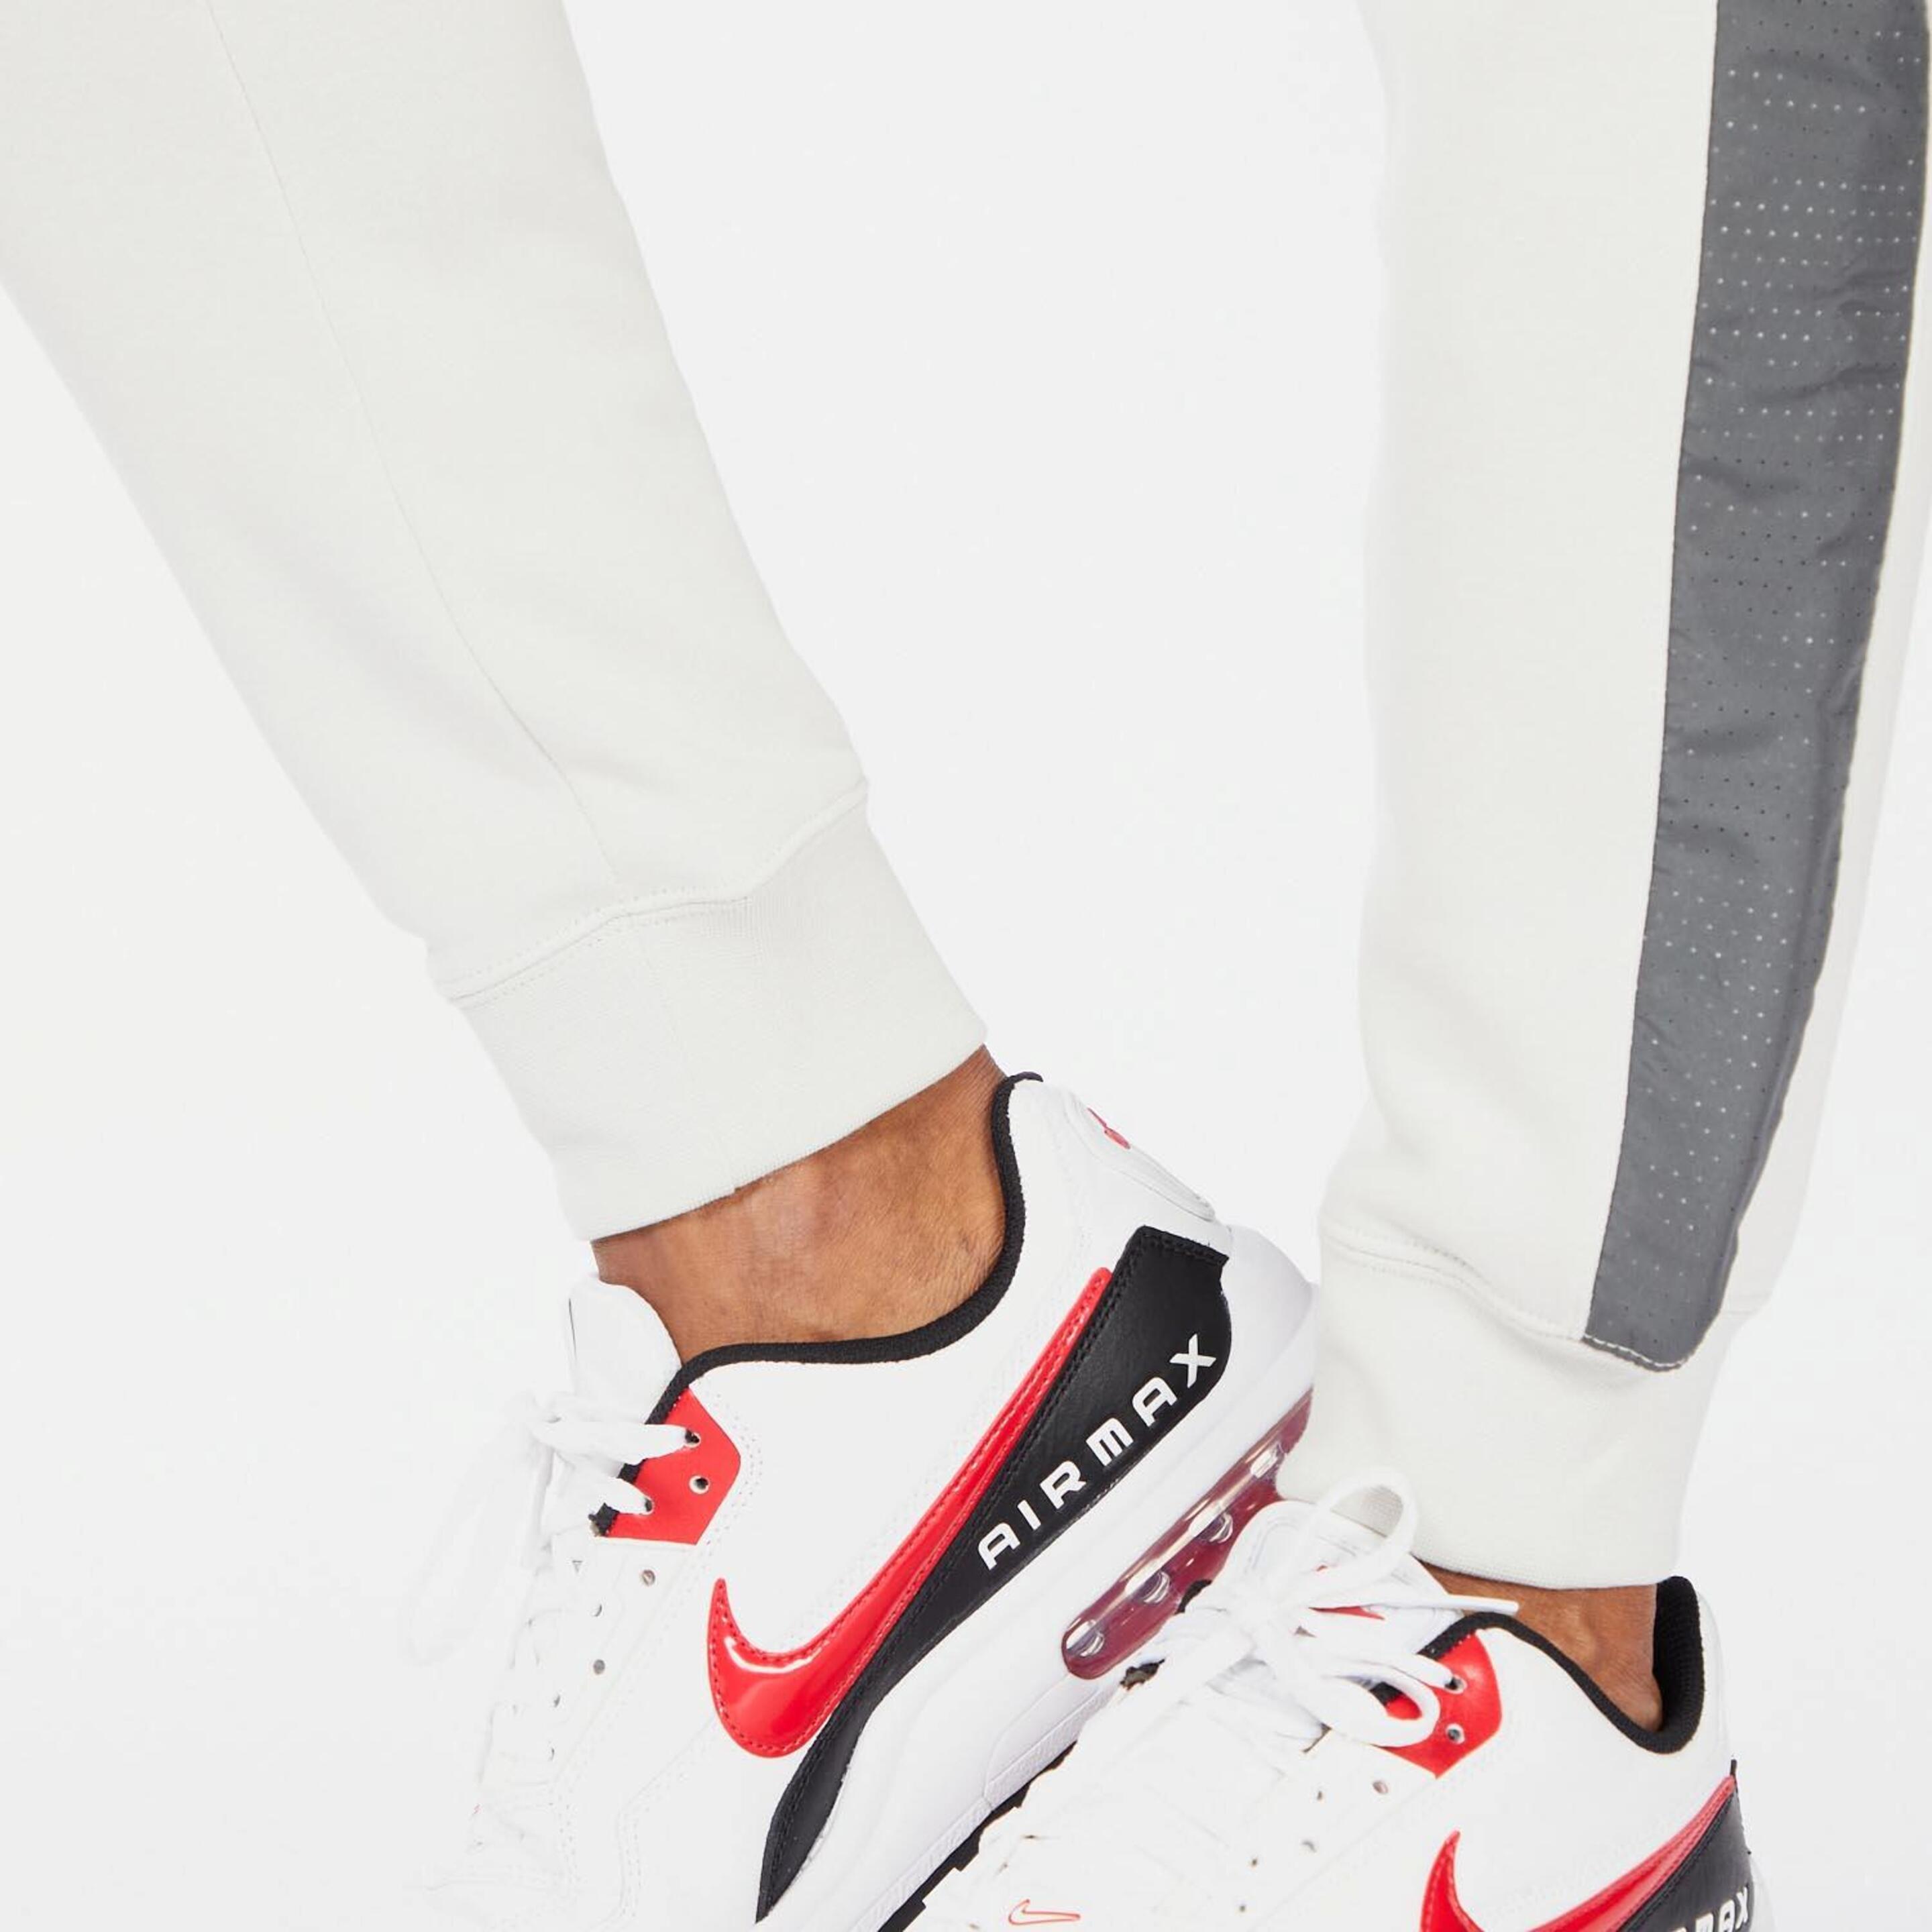 Nike Sport - Crudo - Pantalón Hombre